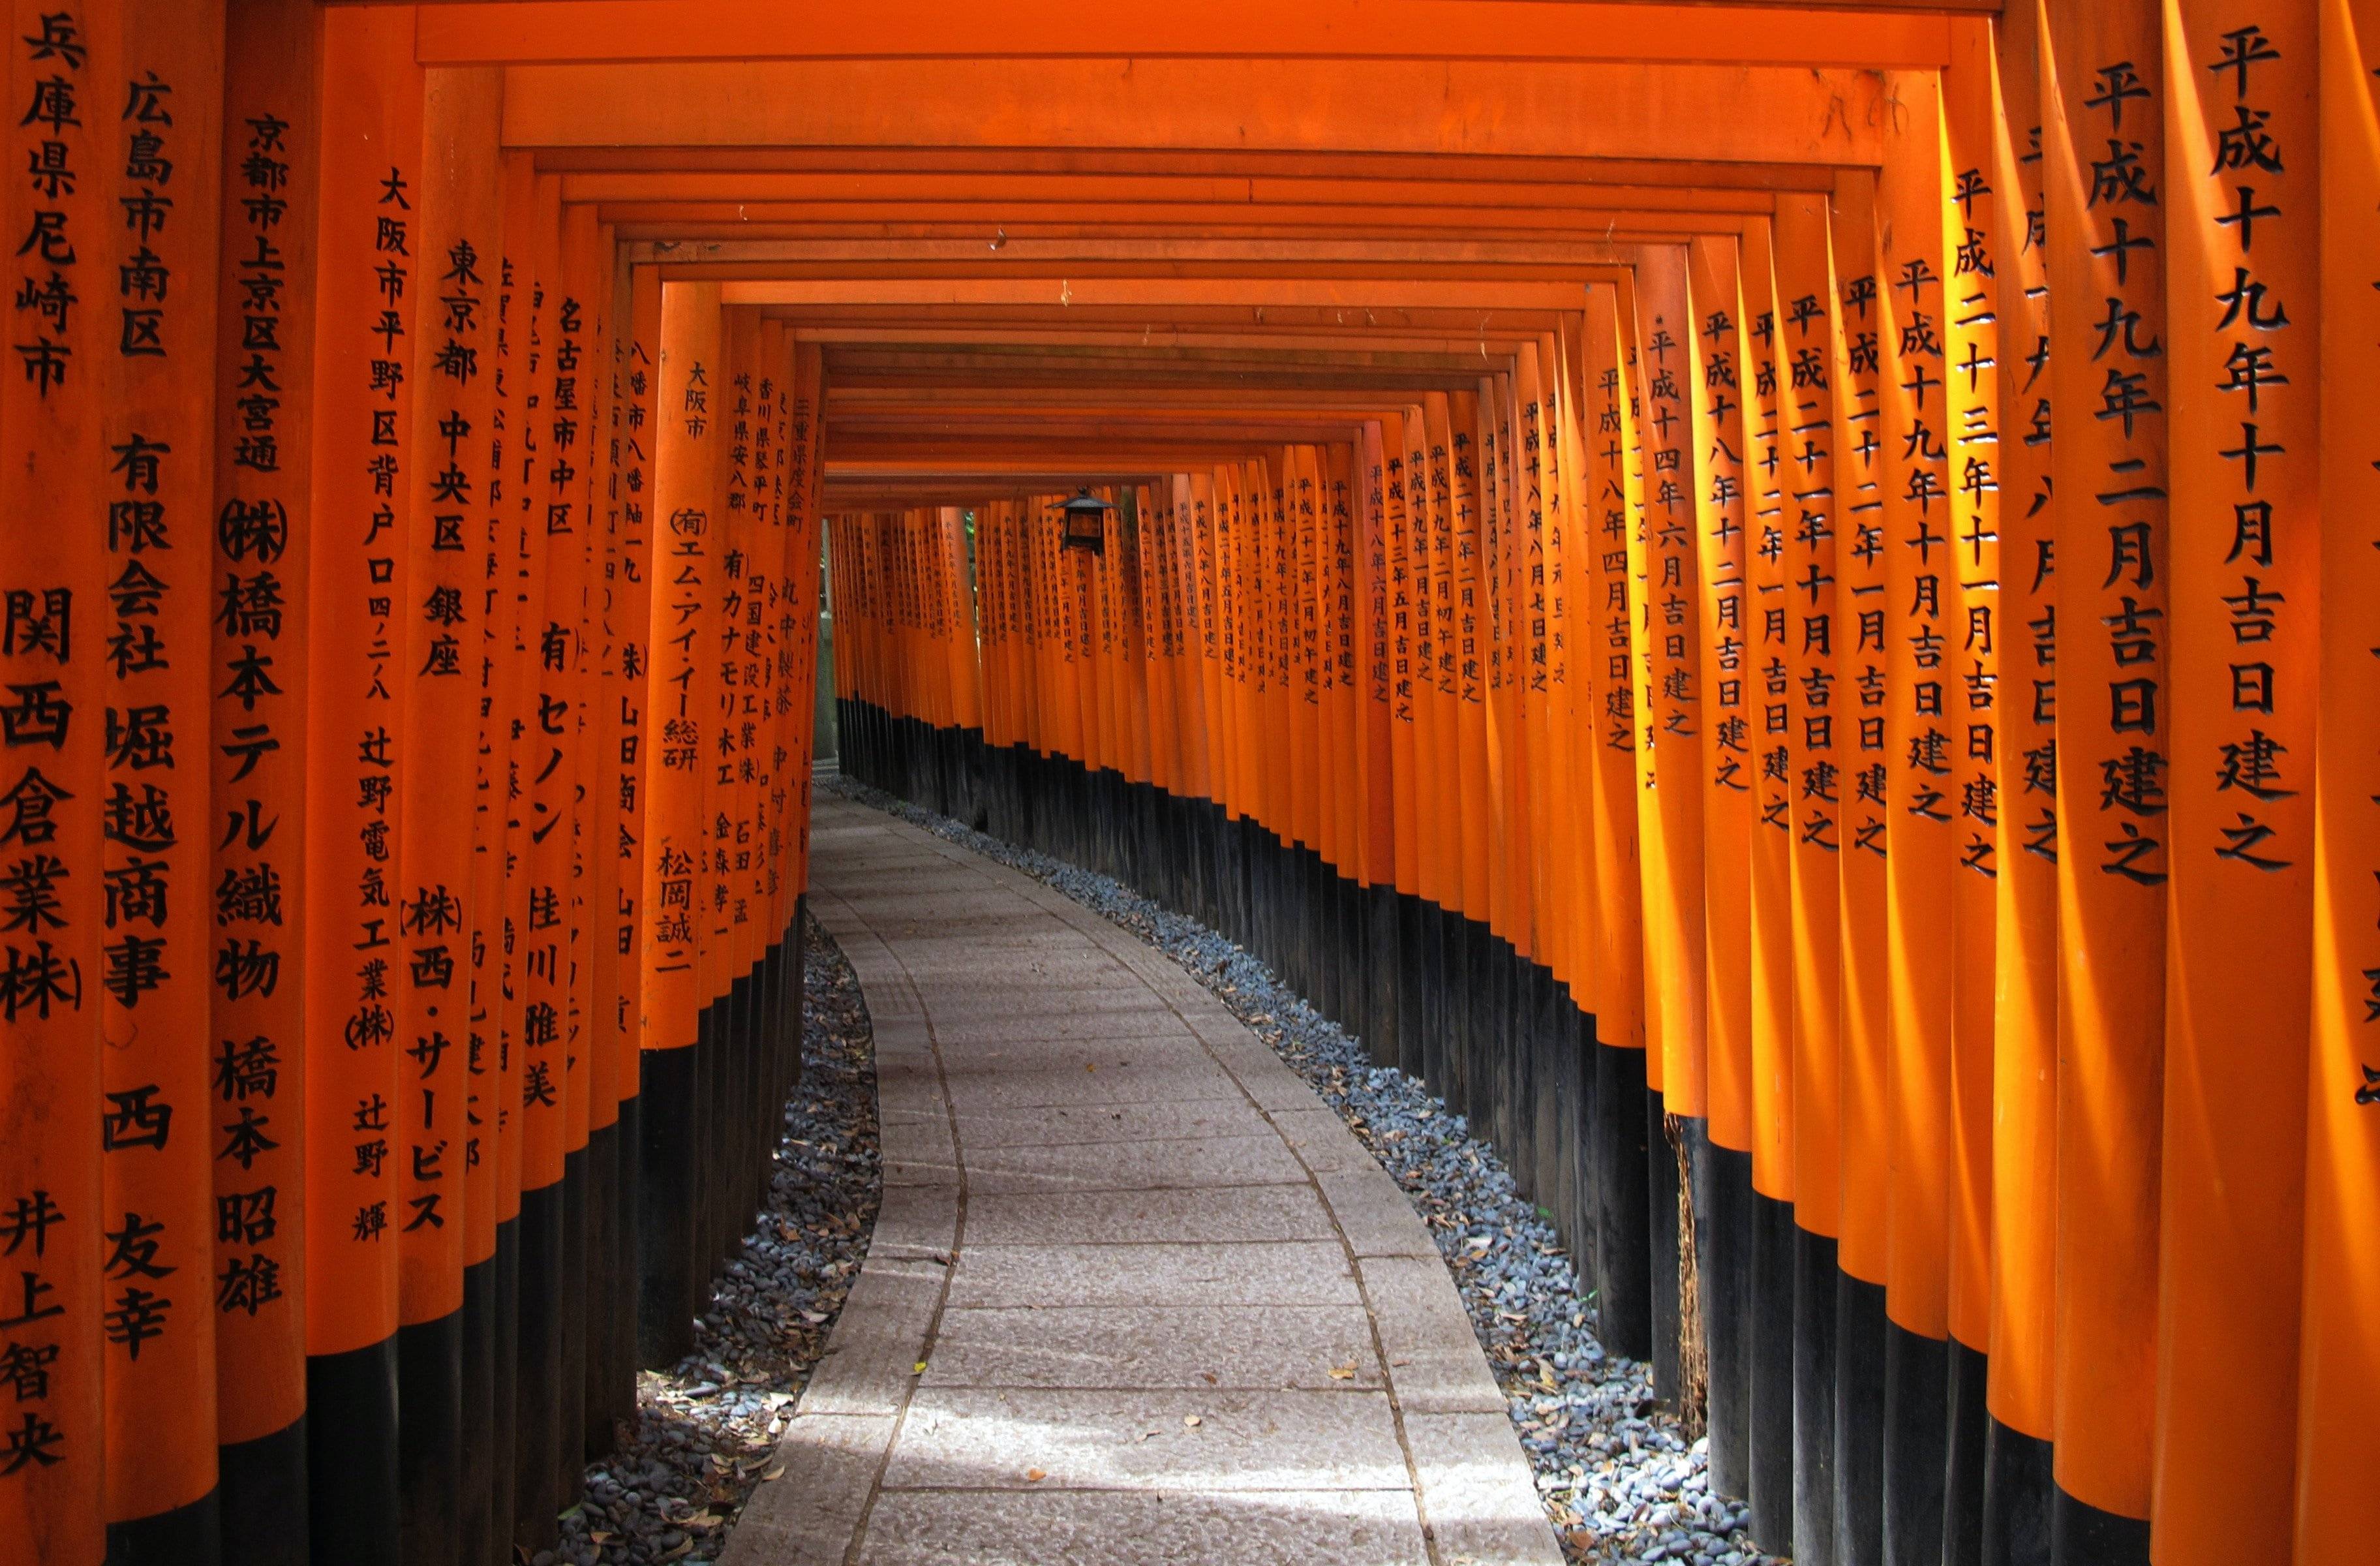 Attraverso i mille torii rossi del Fushimi Inari Taisha fino alla vivace Osaka